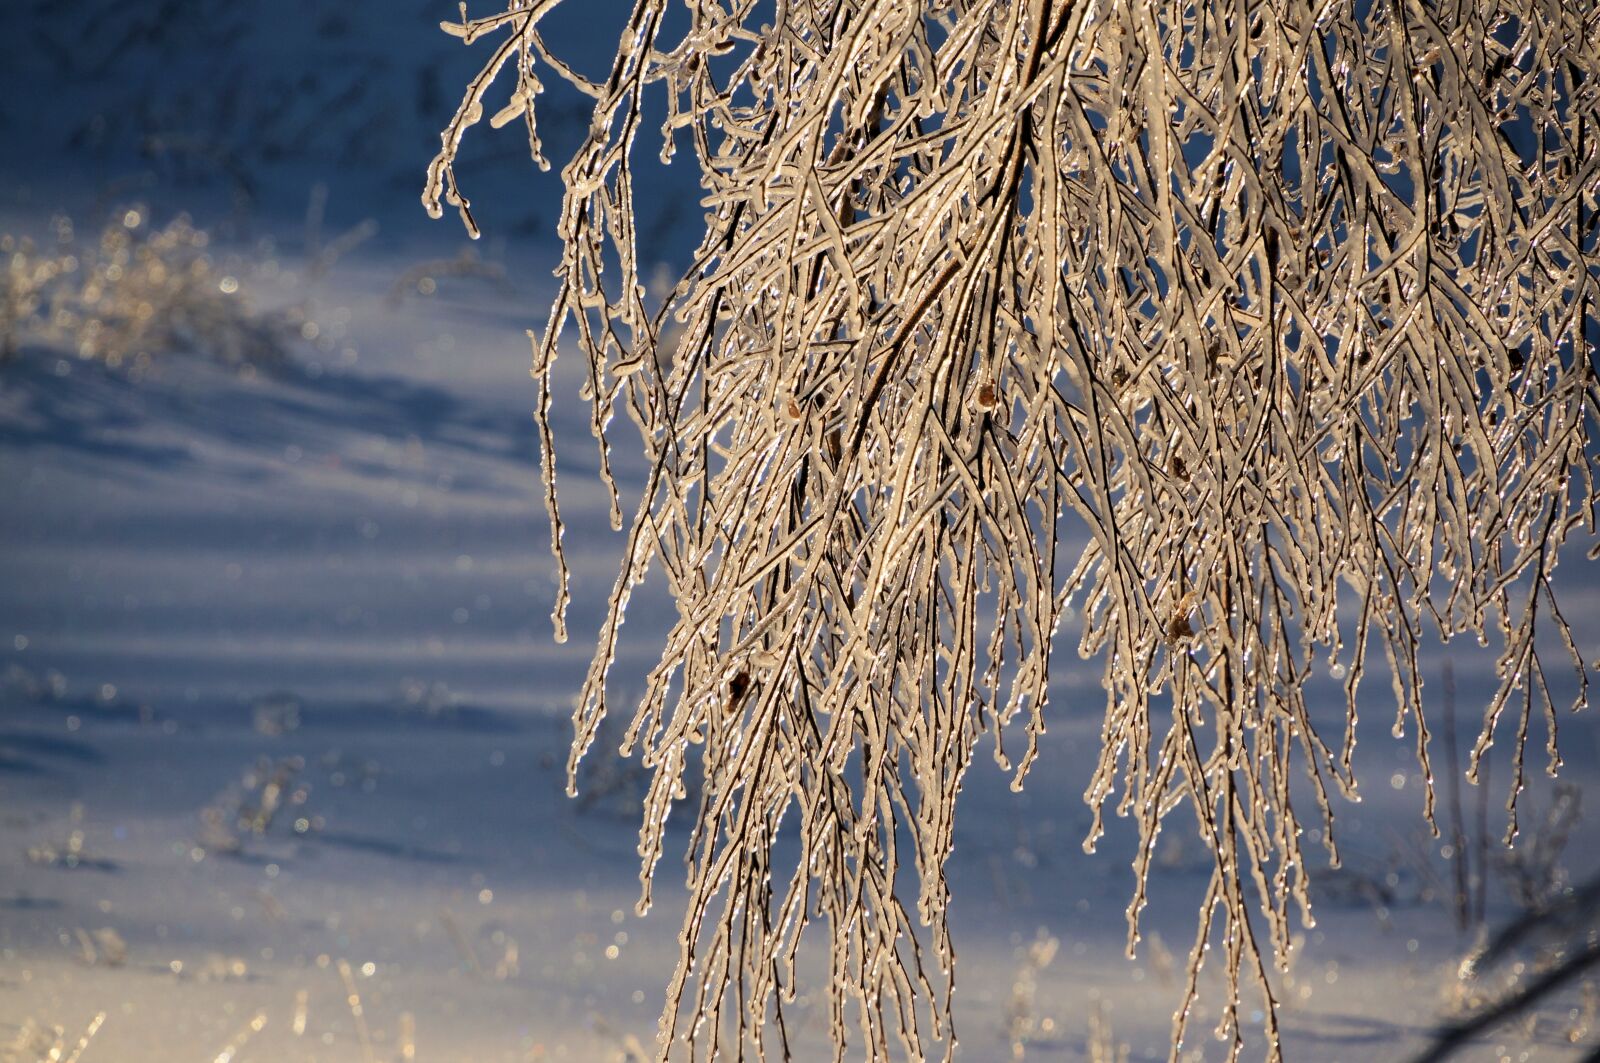 Sony E 18-200mm F3.5-6.3 OSS sample photo. Winter, ice, tree photography